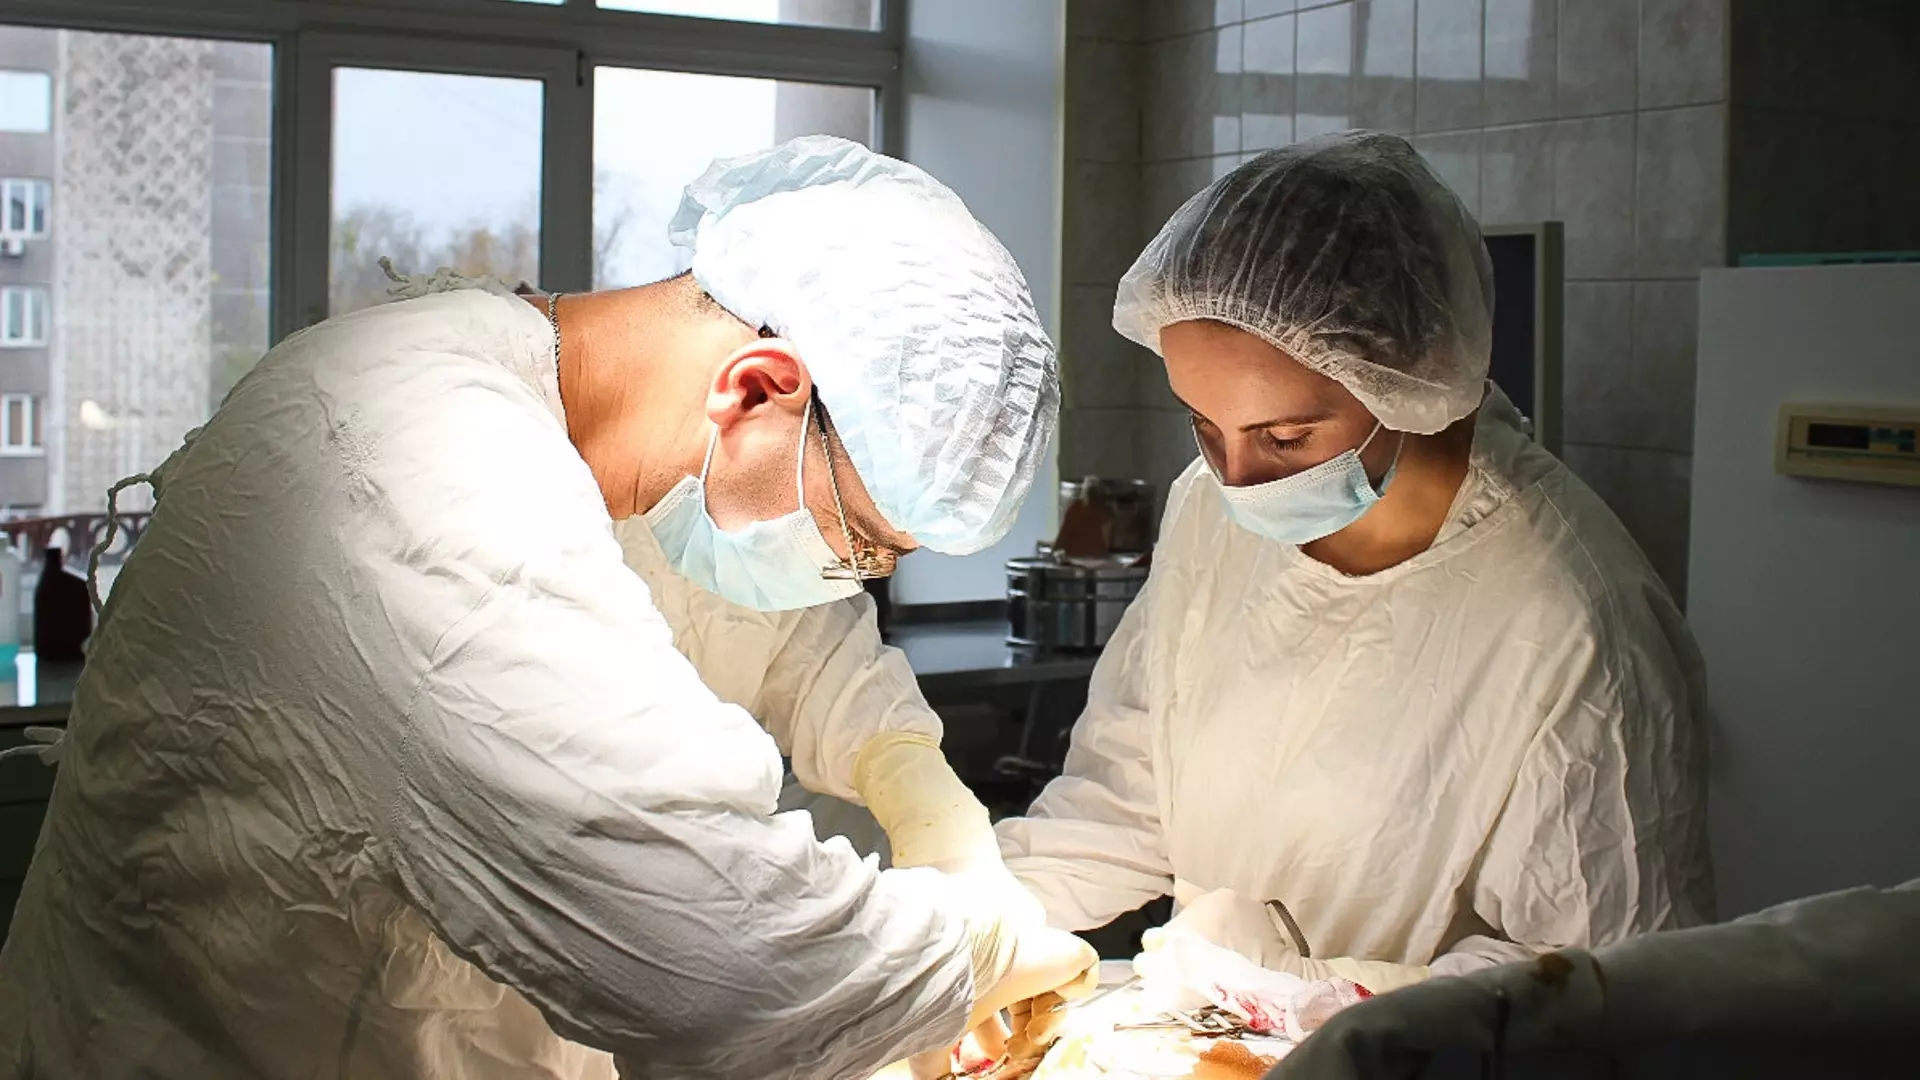 Тюменские хирурги успешно удалили множественные кисты у юной пациентки